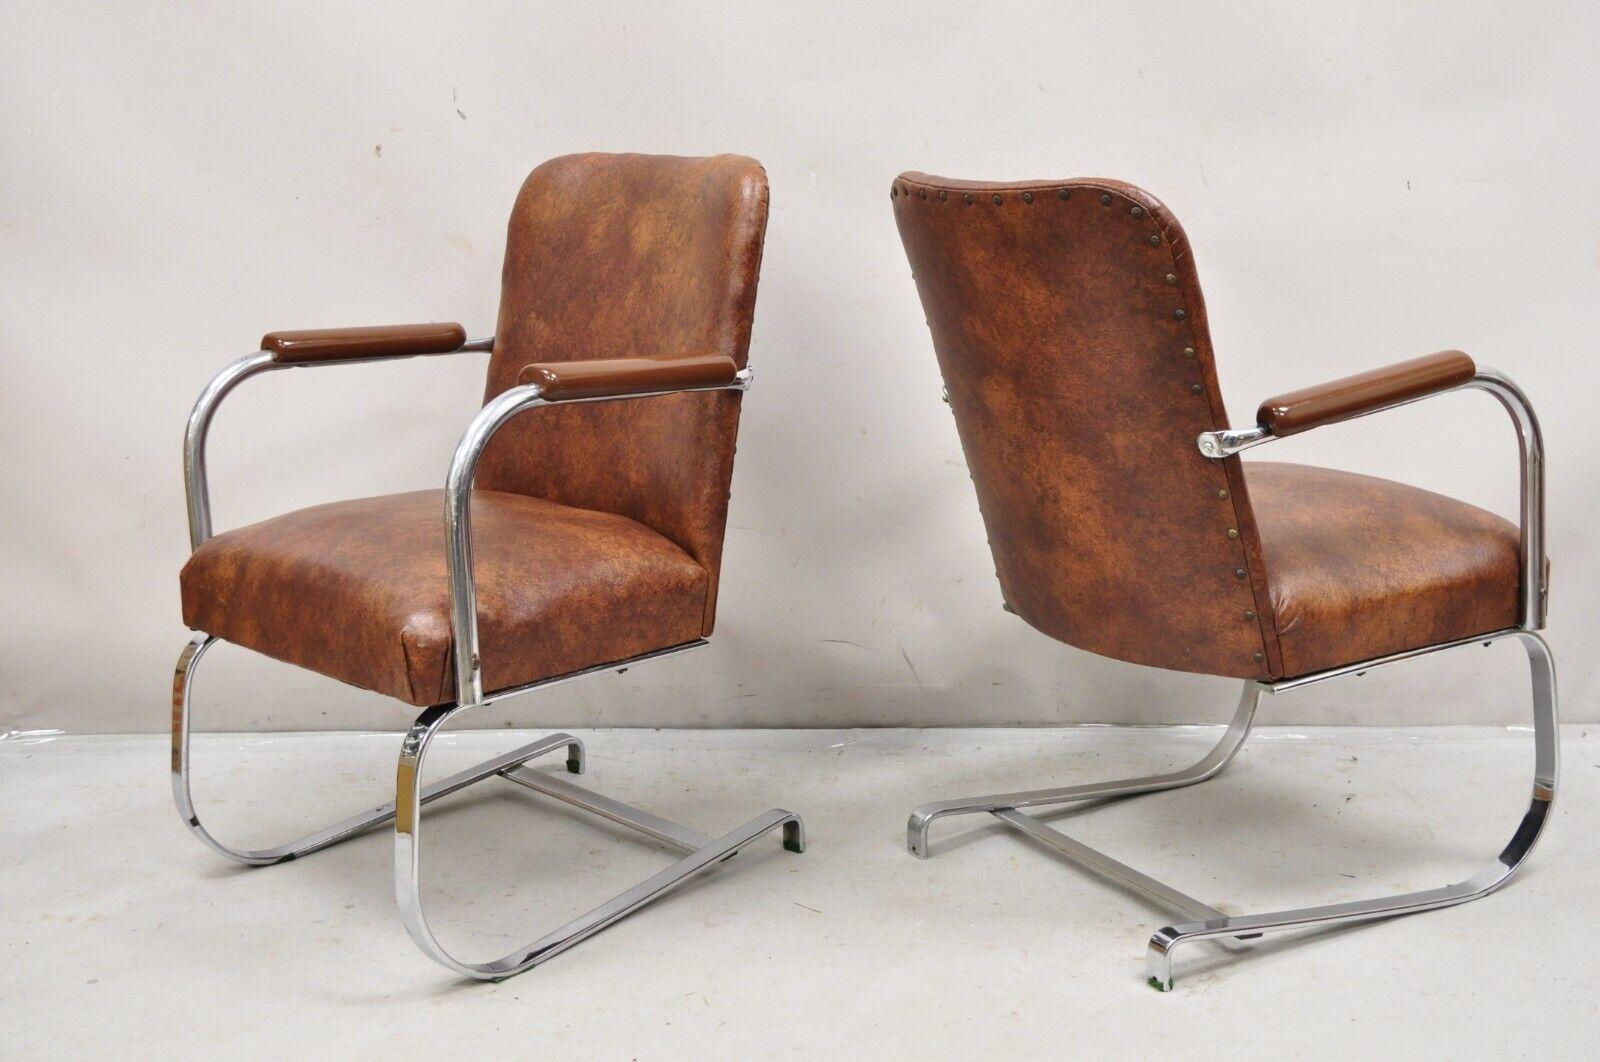 Vintage Lloyd Mfg Kem Weber Art Deco Stahl Freischwinger Lounge Stühle - ein Paar. Artikel verfügt über eine Stahlflachstange Freischwinger Rahmen, braun Naugahyde Polsterung, original Label, sehr schöne antike / Vintage Stühle. CIRCA 1930er Jahre.